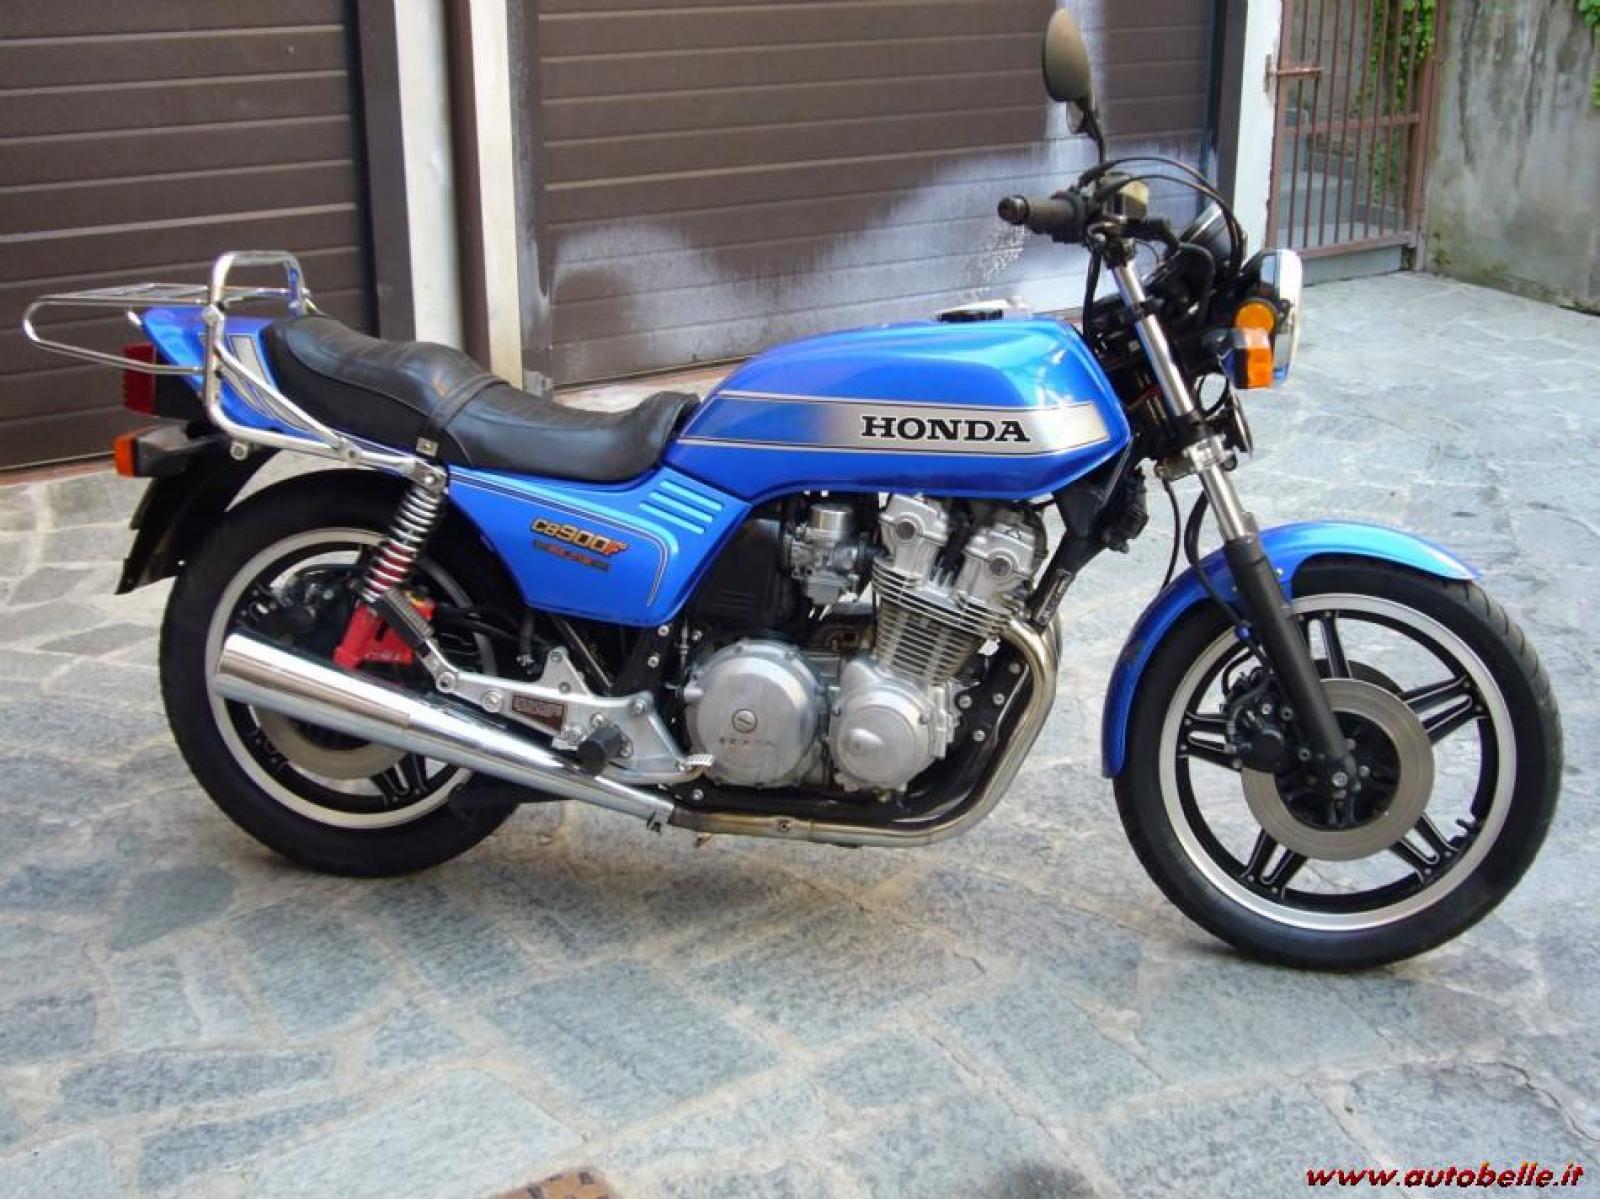 Honda - CB Bol dOr - 900 cc - 1981 - Catawiki